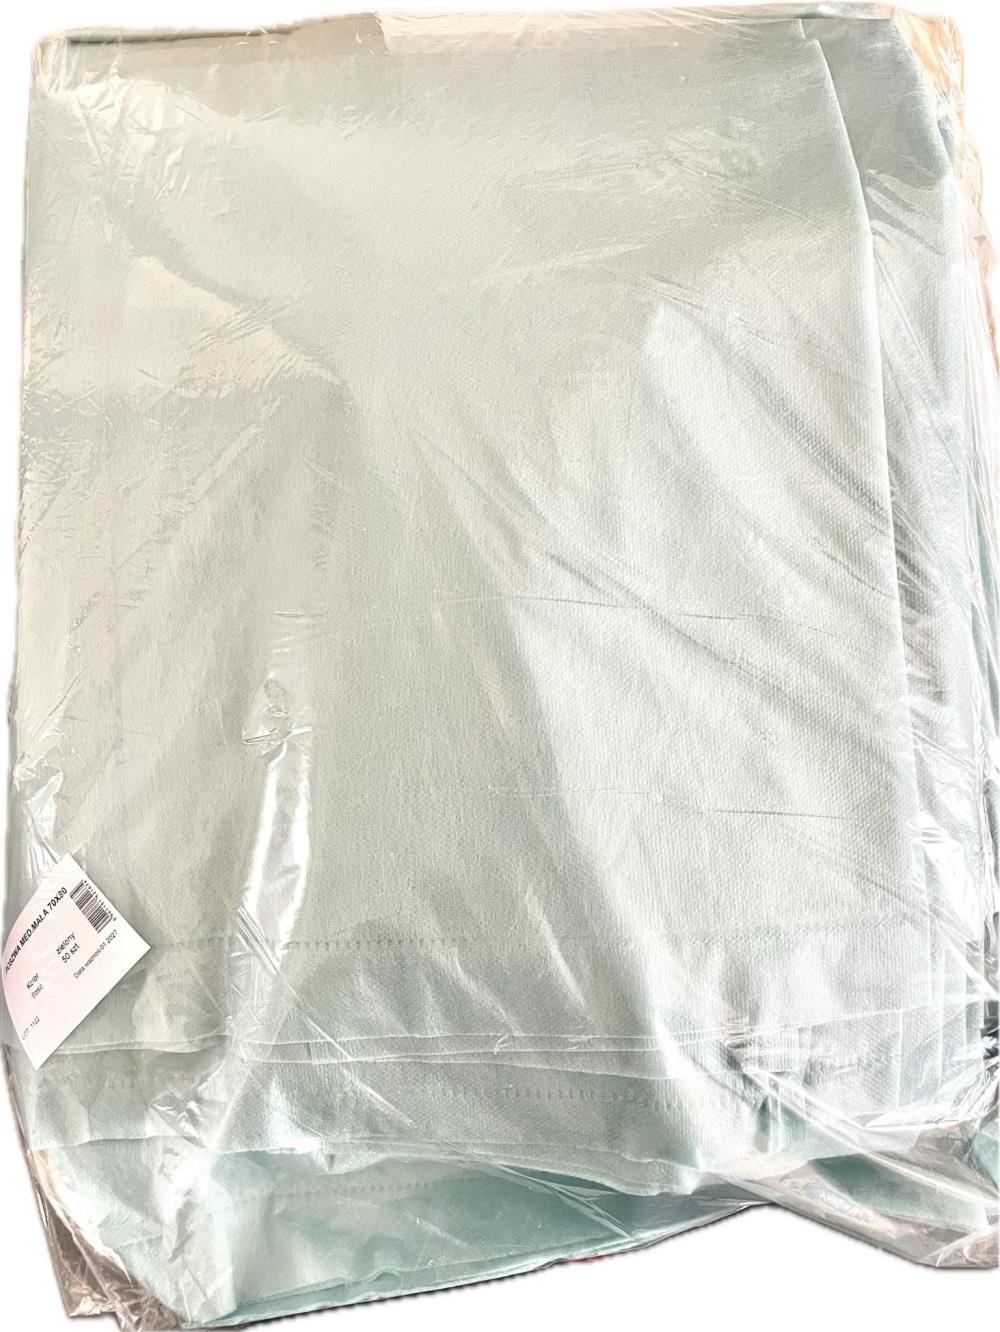 Poszewka medyczna na poduszkę, 70 x 80 cm, włóknina, kolor zielony, op. 10 szt 